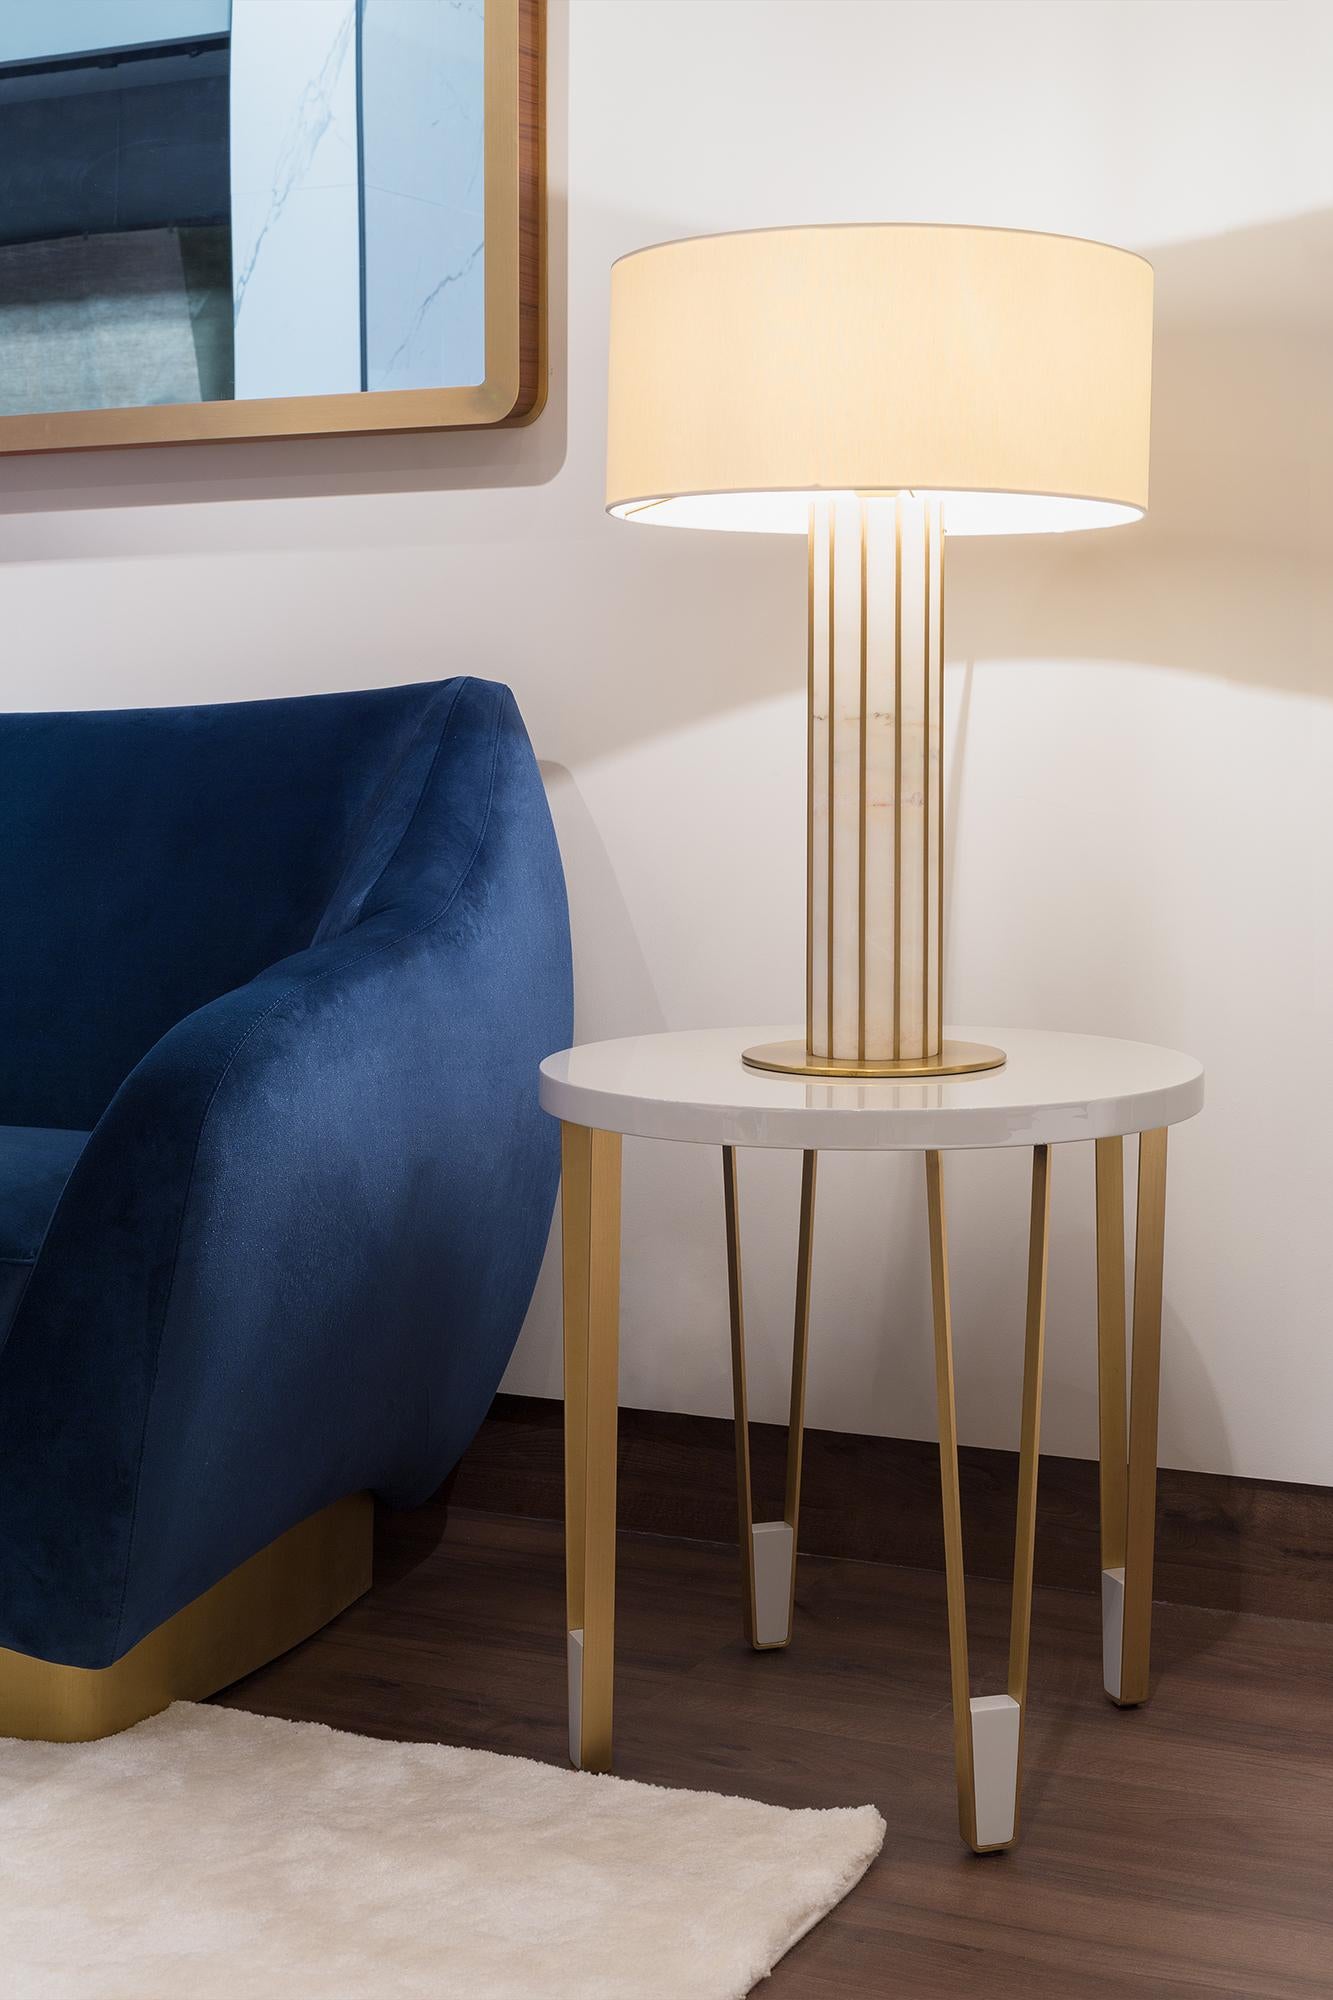 La lampe de table Seagram reçoit le nom de la première tentative de construction de gratte-ciel par l'architecte moderniste Mies van der Rohe.
Suivant l'esthétique fonctionnaliste de l'immeuble Seagram situé à New York, cette pièce d'éclairage